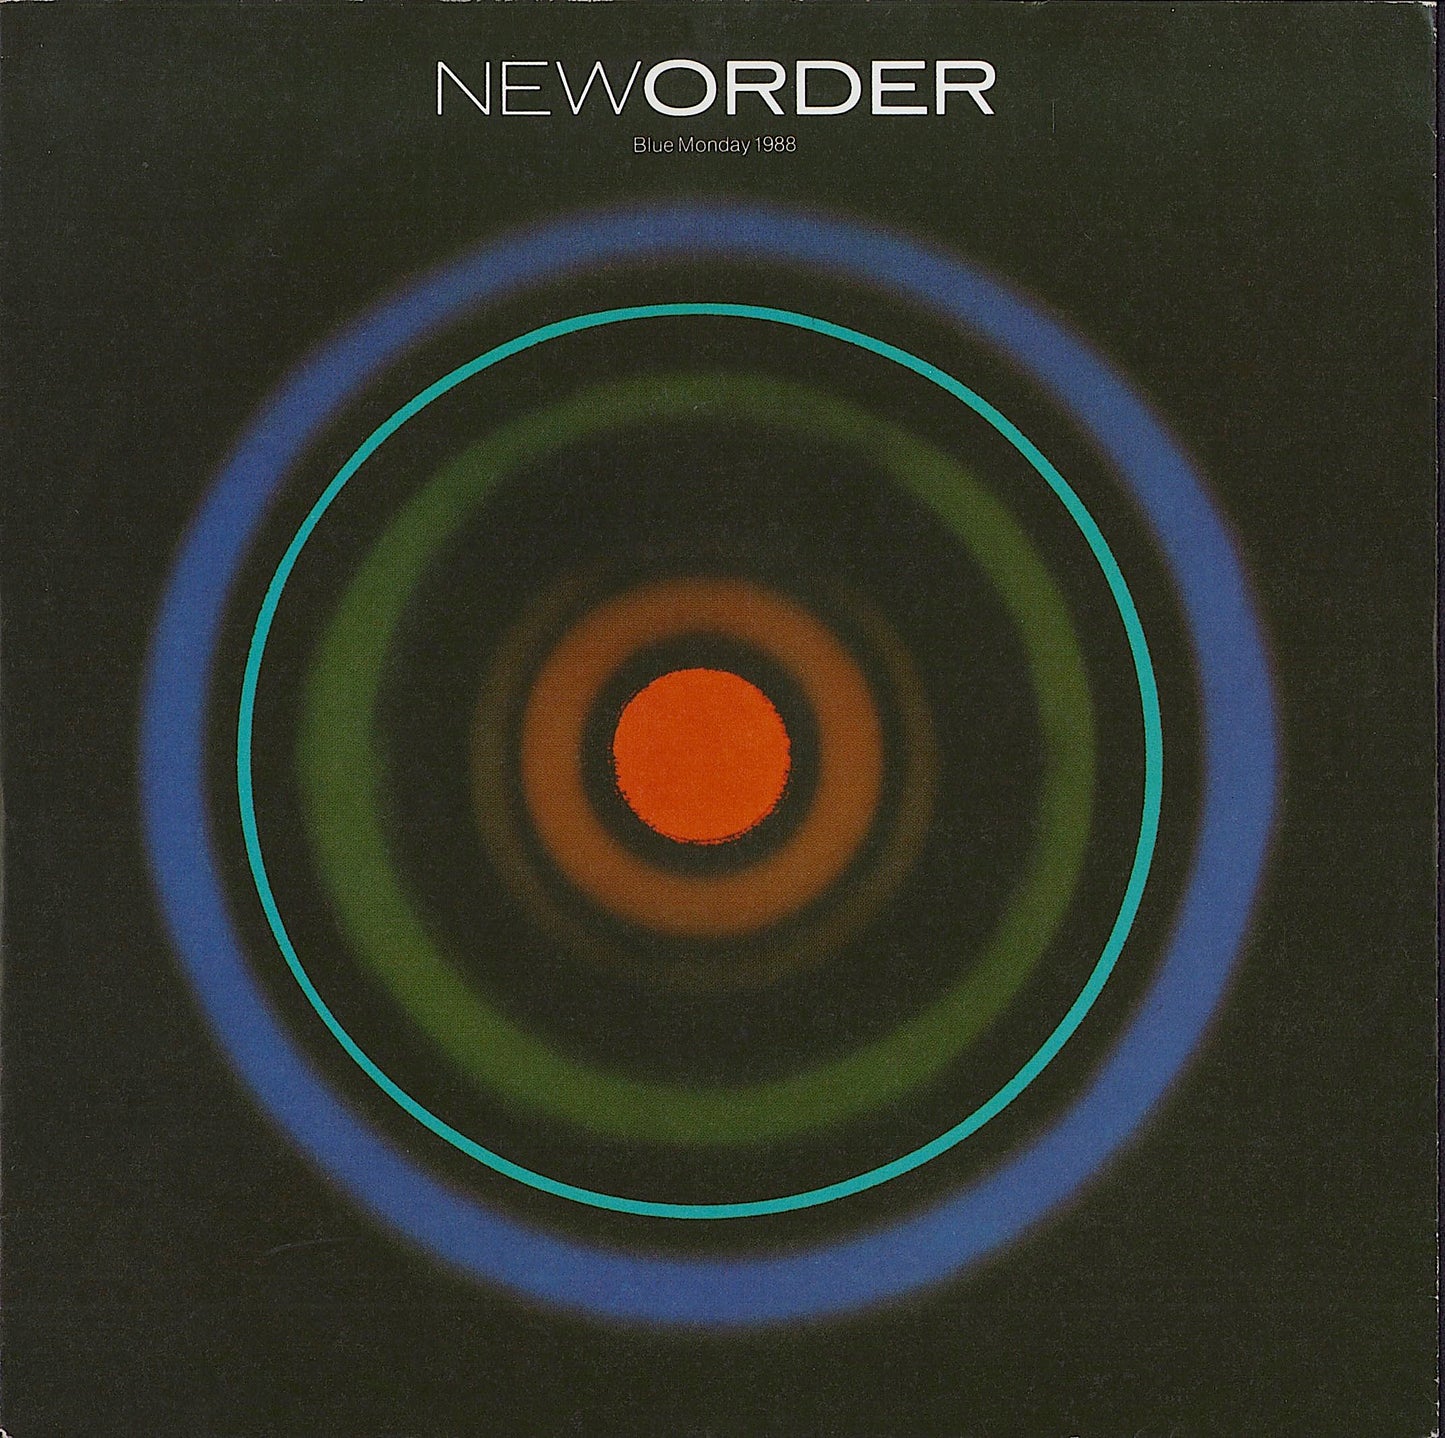 NewOrder - Blue Monday 1988 (Vinyl 7")